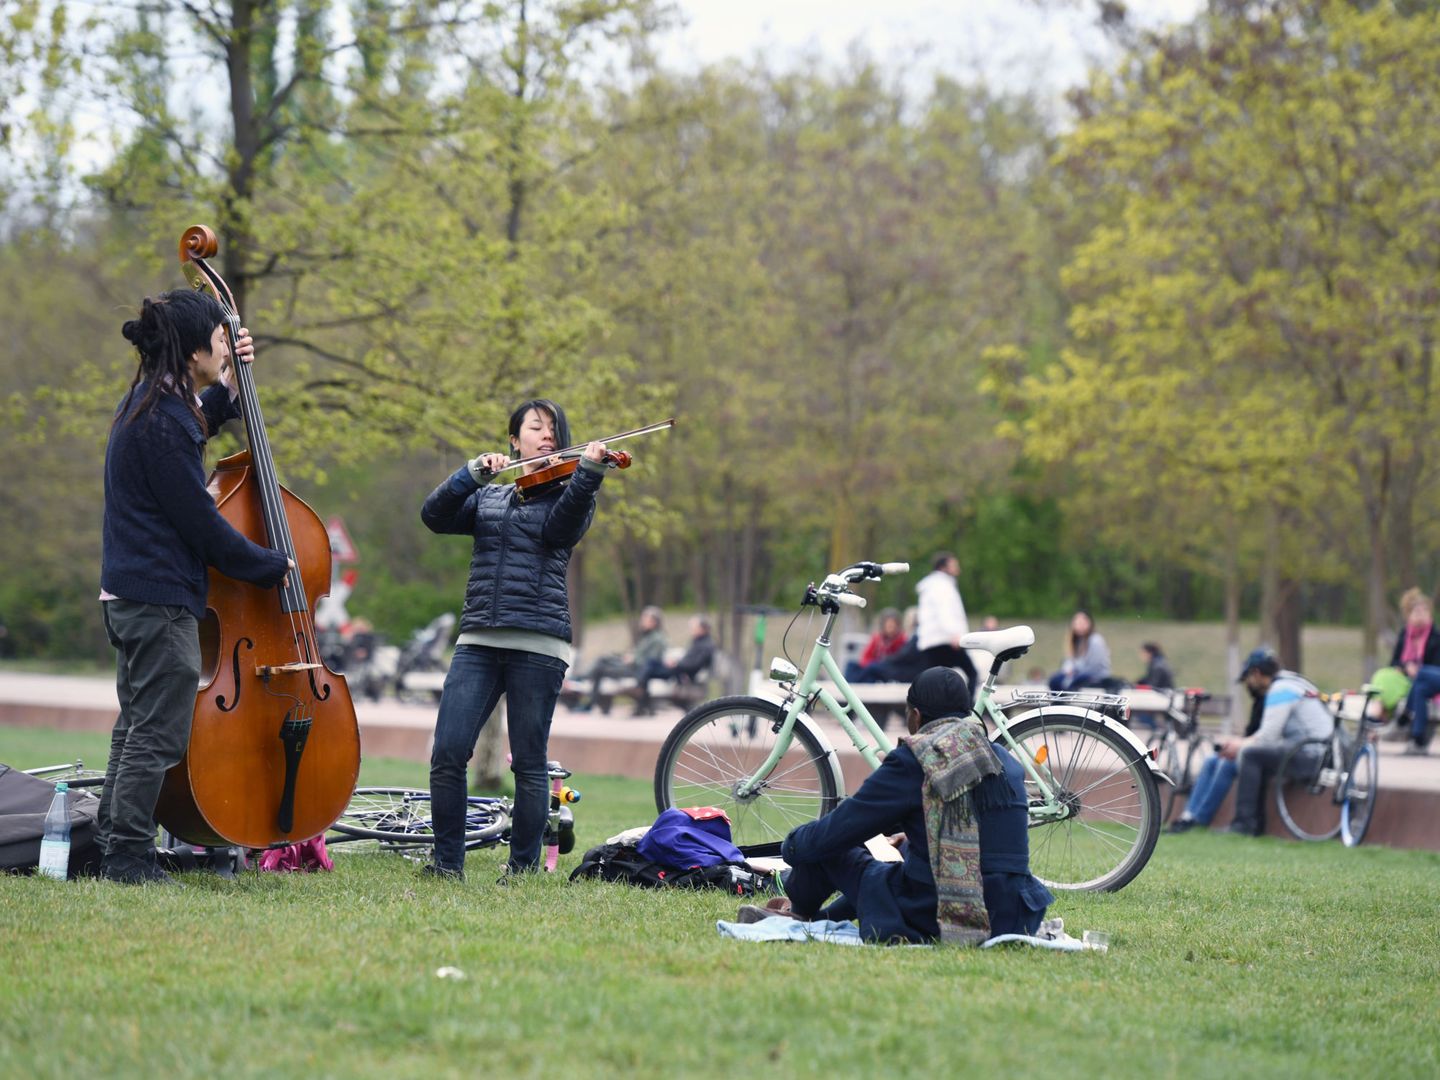 Personas tocando instrumentos en un parque de Berlín. (Reuters)